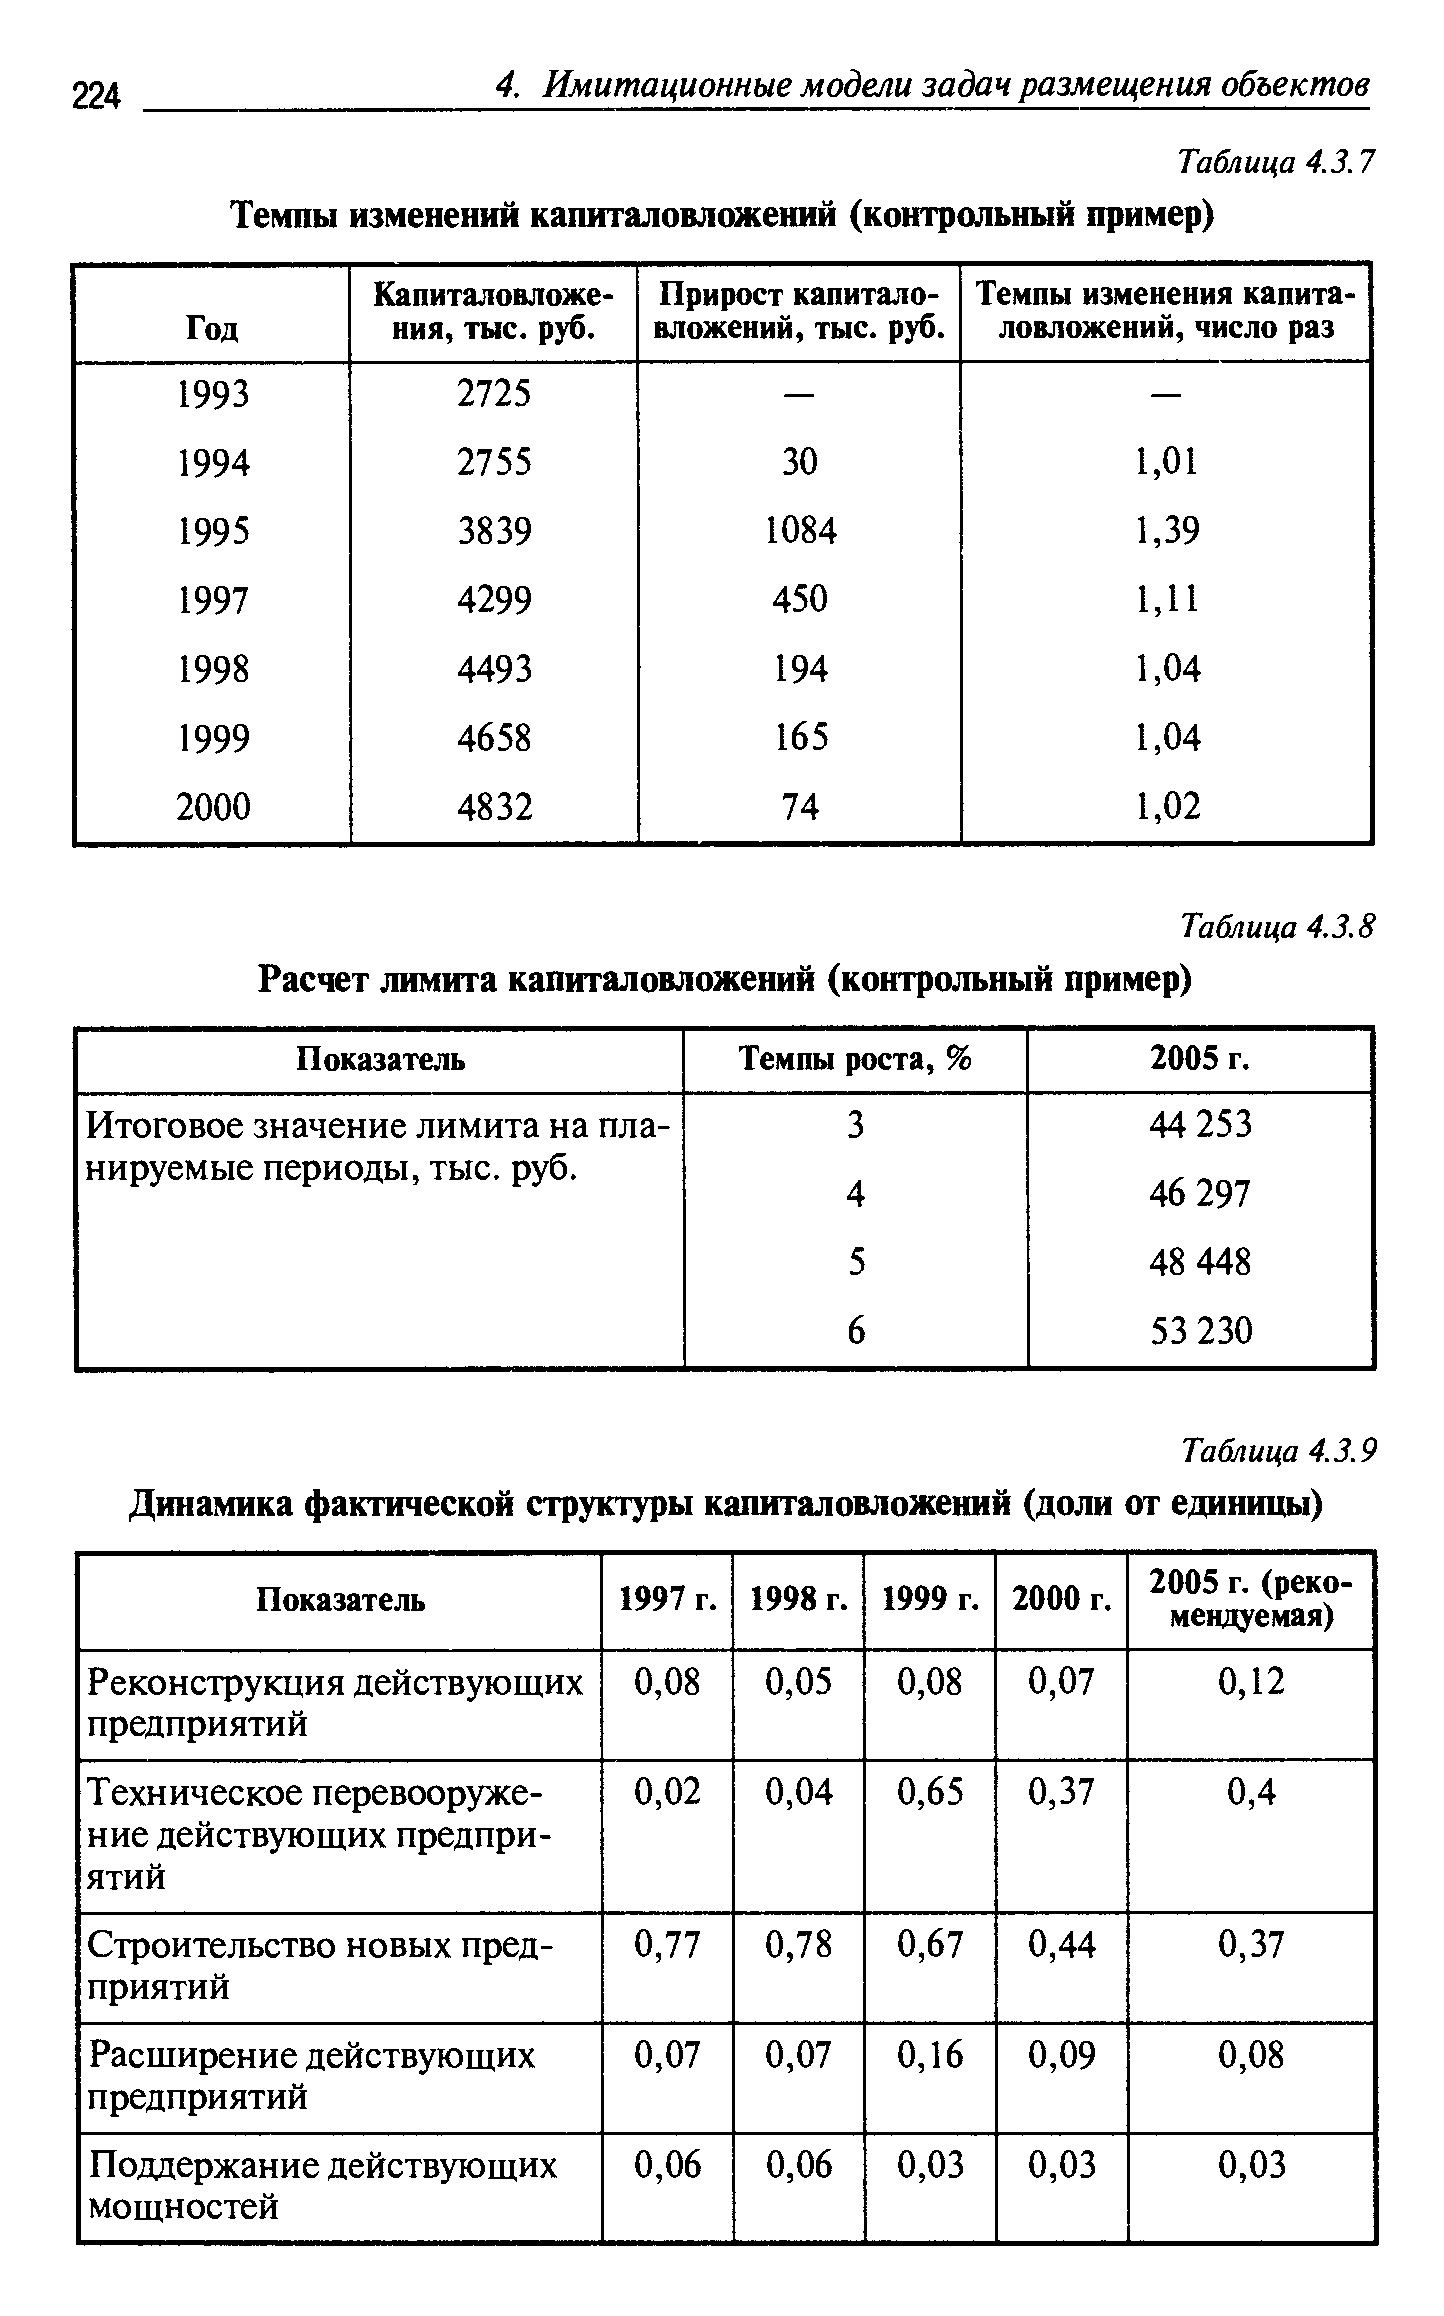 Таблица 4.3.9 Динамика фактической структуры капиталовложений (доли от единицы)
